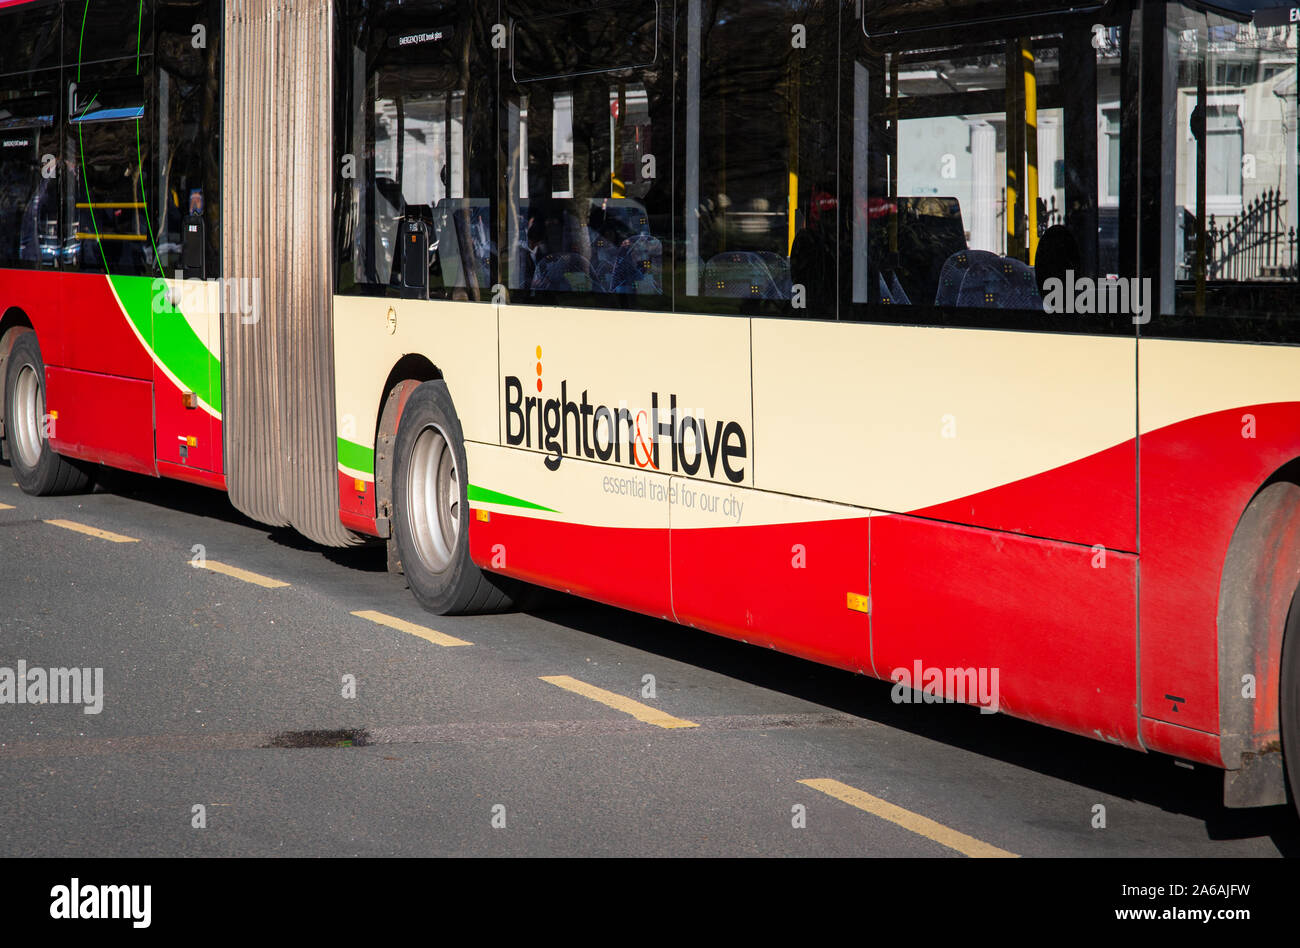 Berühmte 2 Etage englisch Bus Brighton die Hove öffentliche Stockfotografie  - Alamy